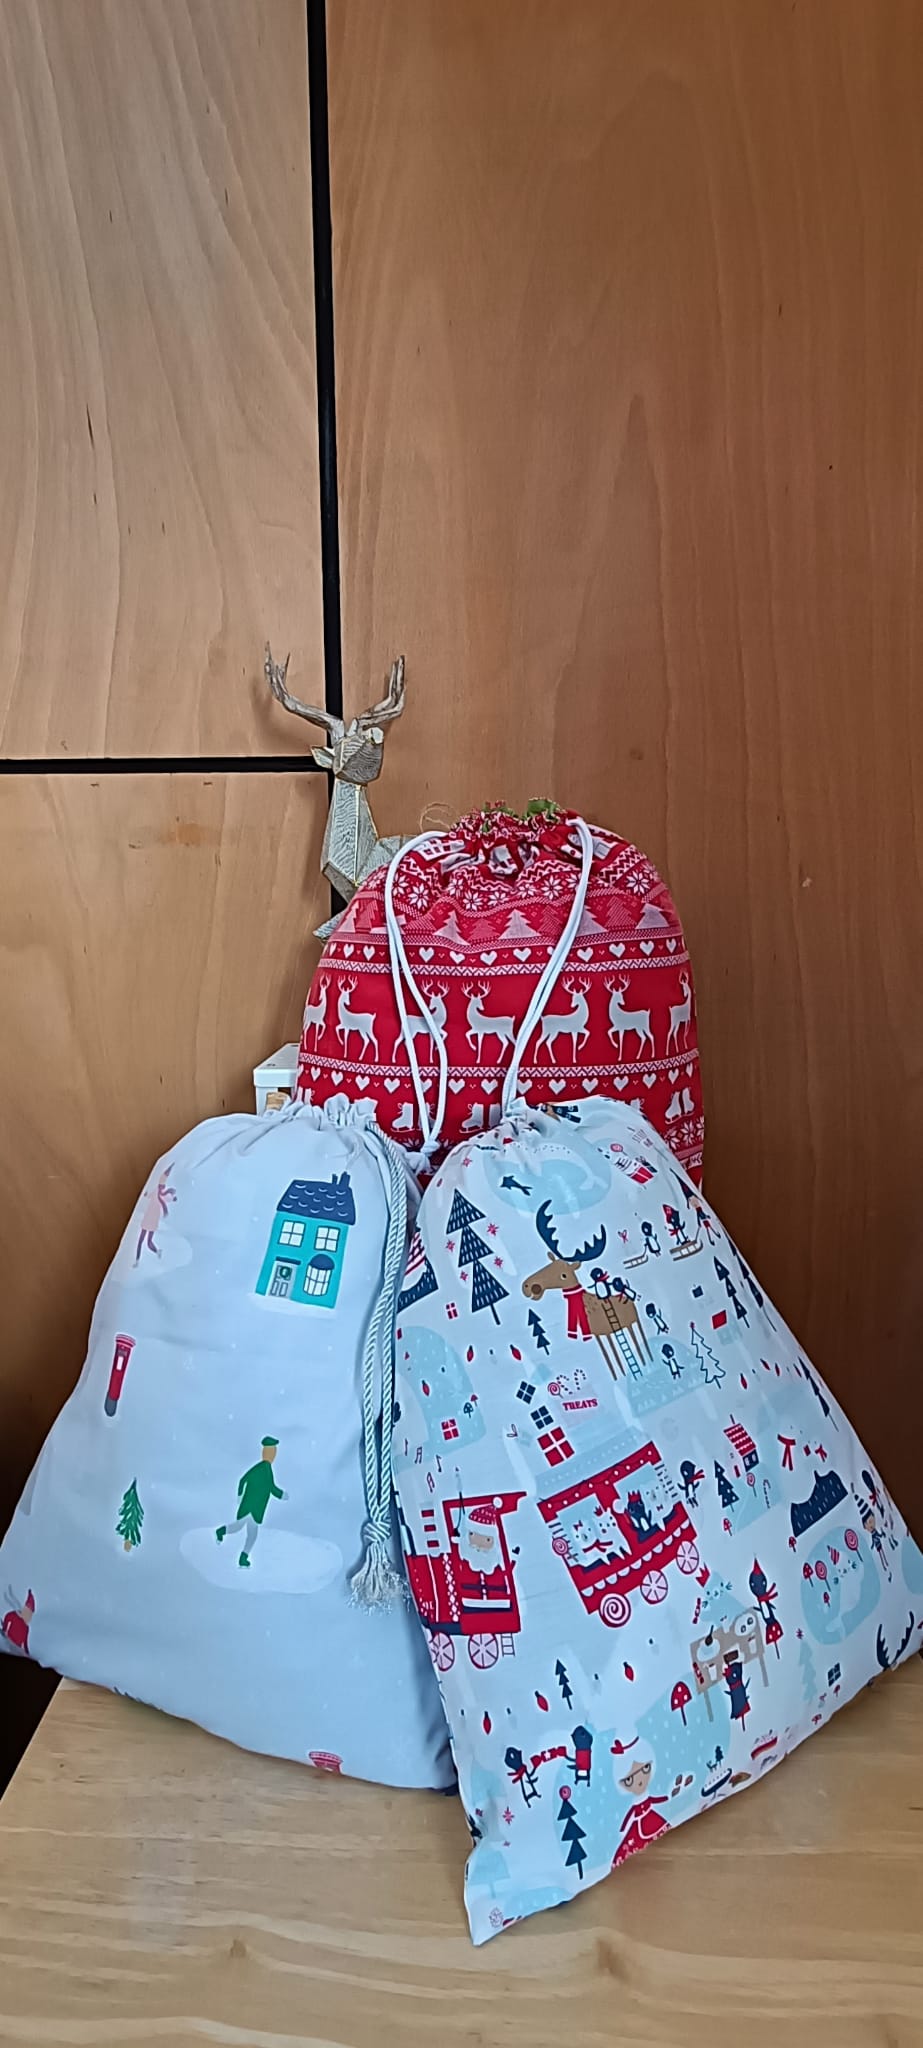 Christmas Pj bags